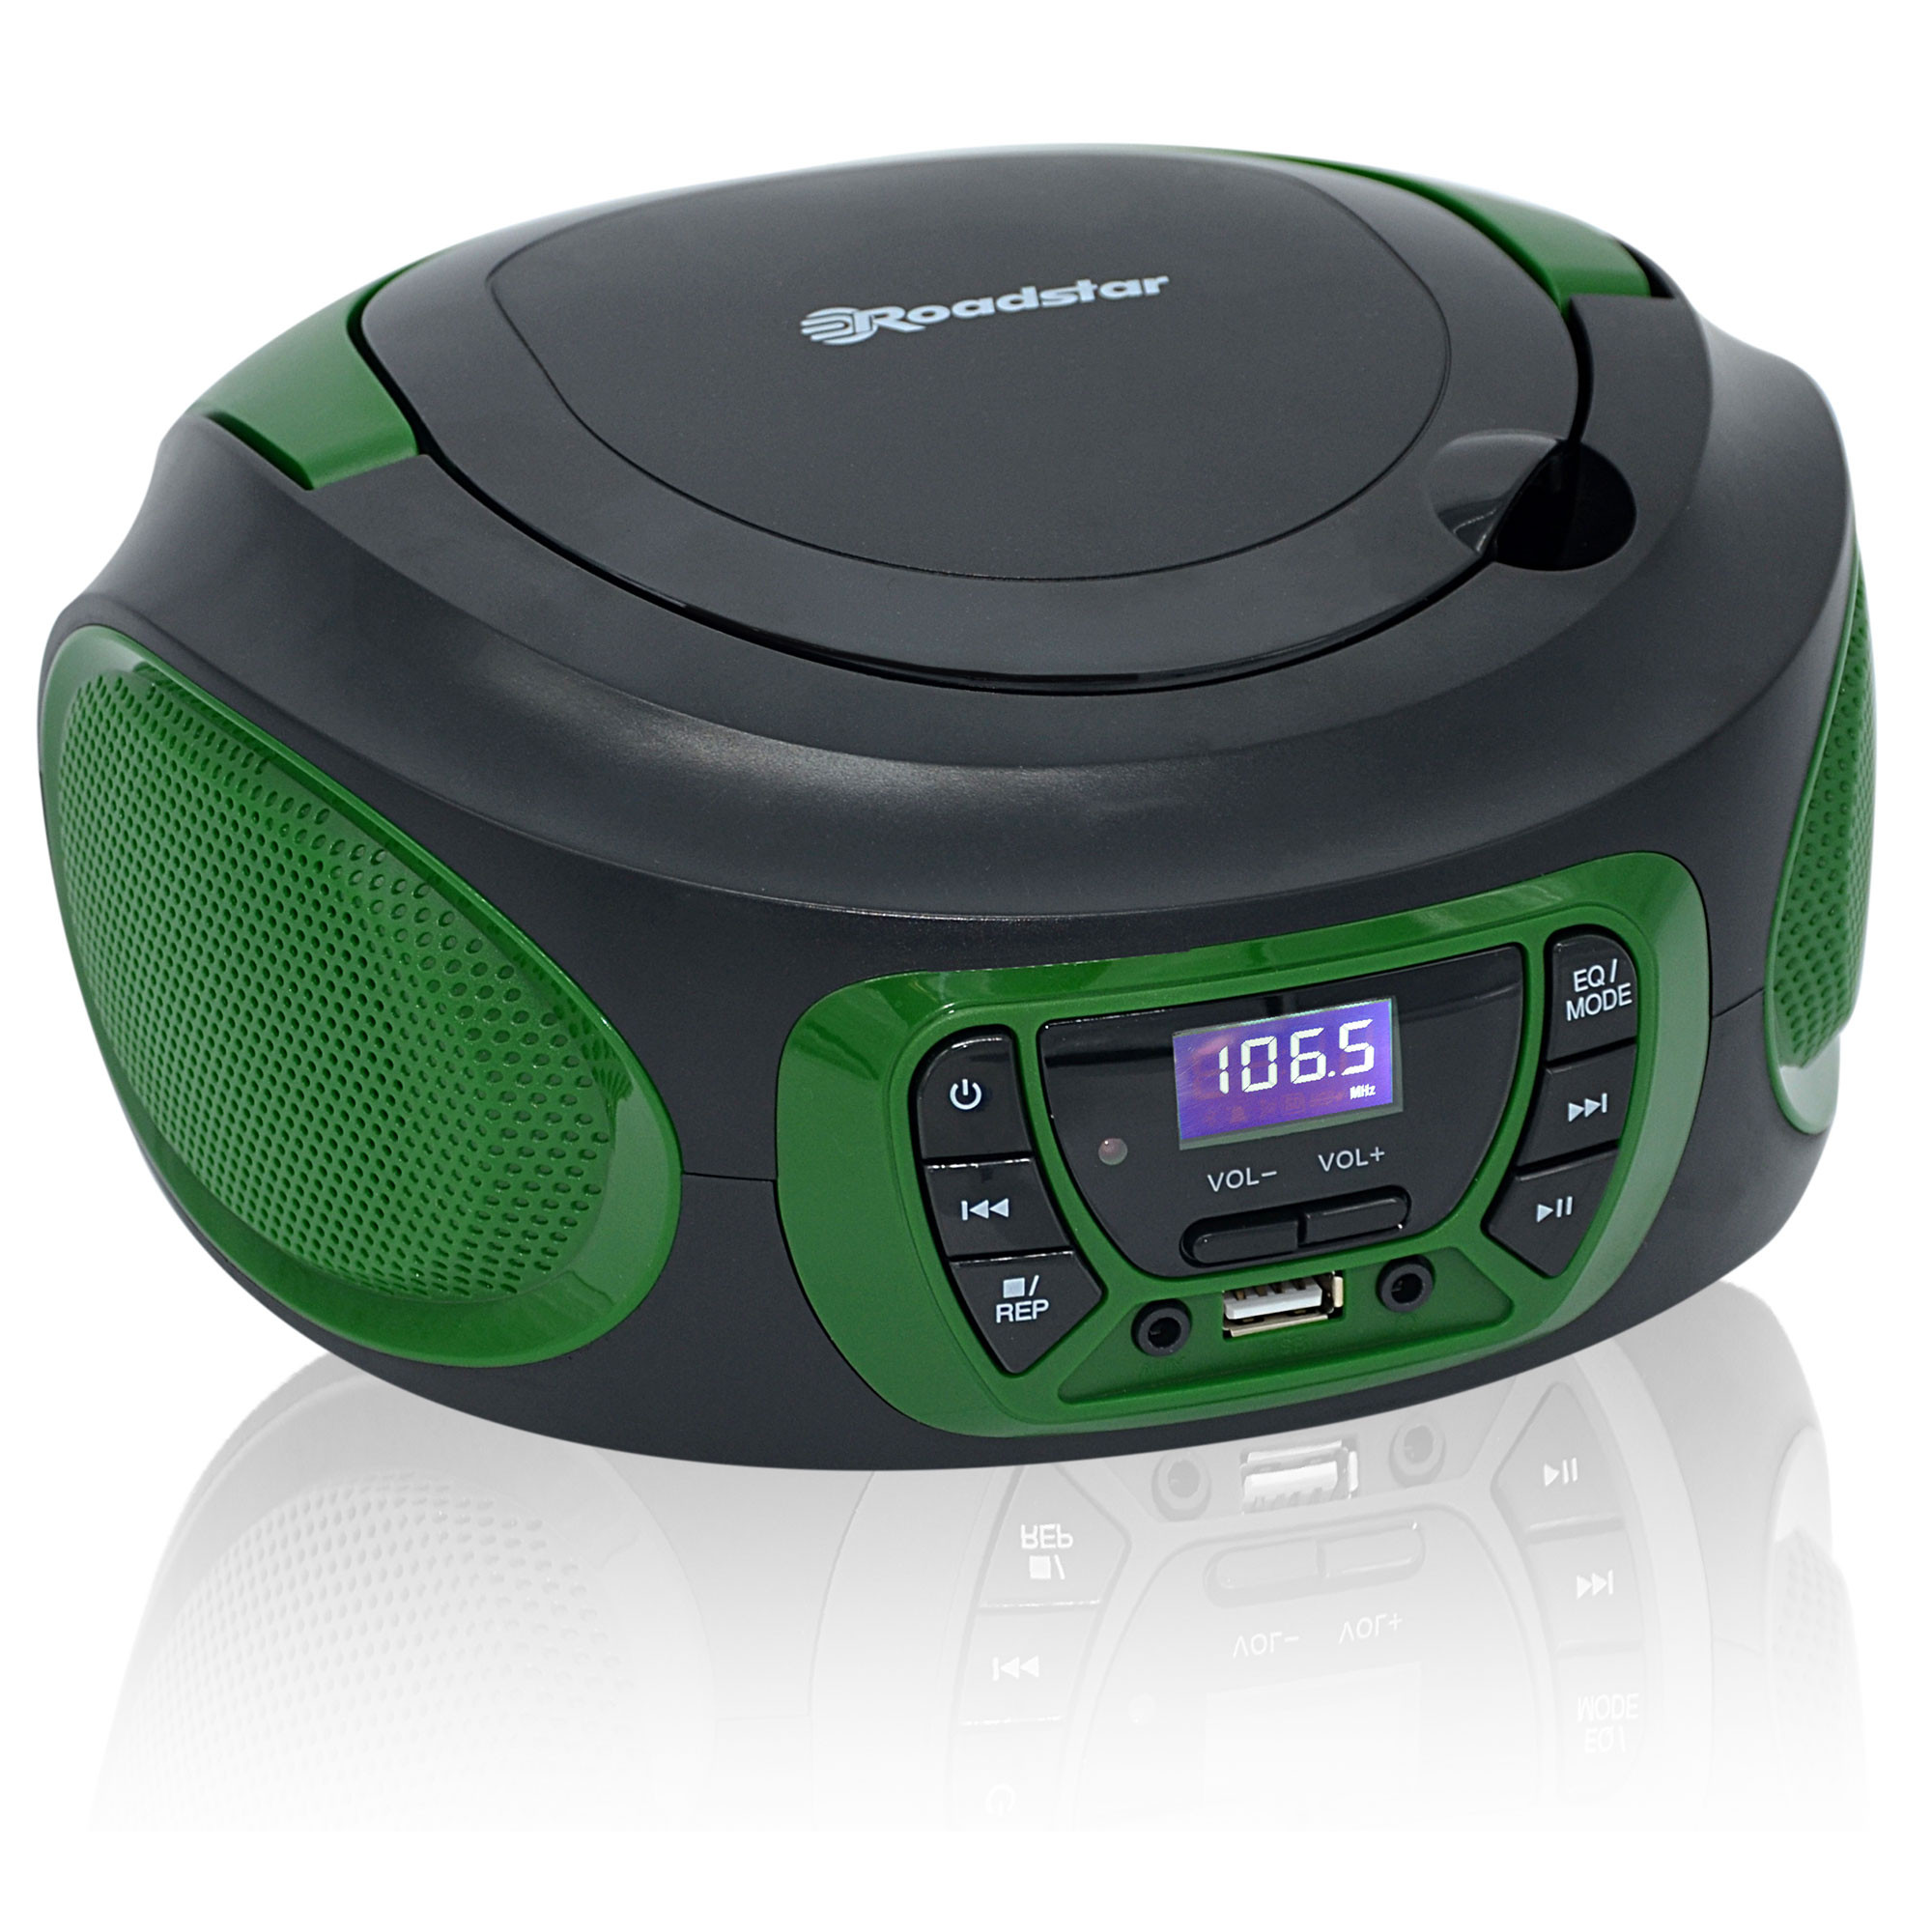 Roadstar TRA-2989 Radio Portátil Multibanda AM/FM/SW Analógica